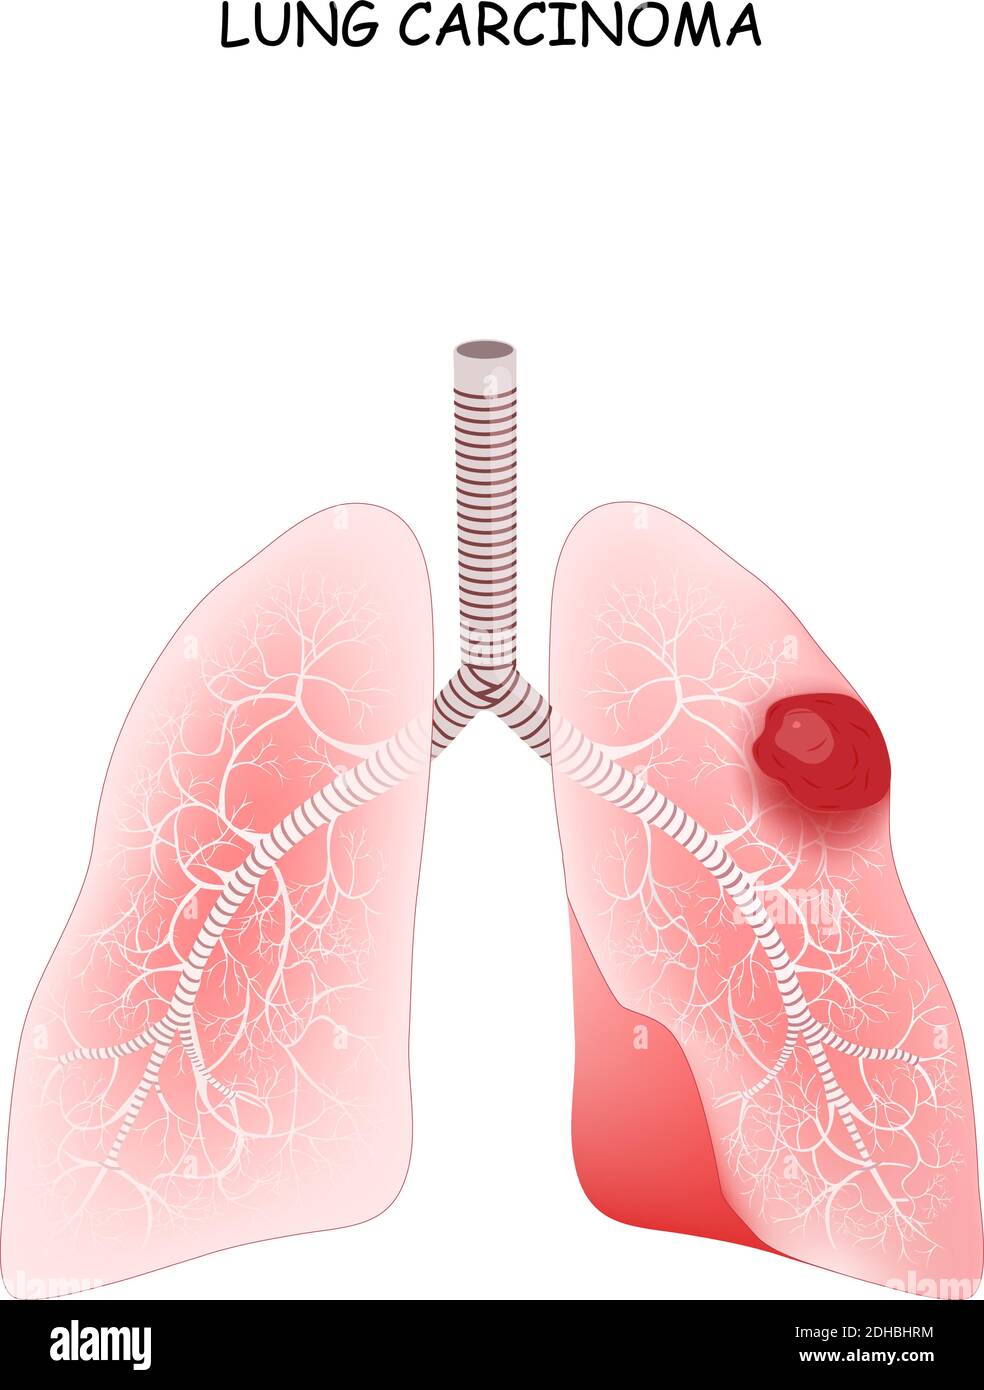 Carcinoma polmonare. Il carcinoma è un tumore maligno del polmone. Illustrazione vettoriale per uso medico Illustrazione Vettoriale